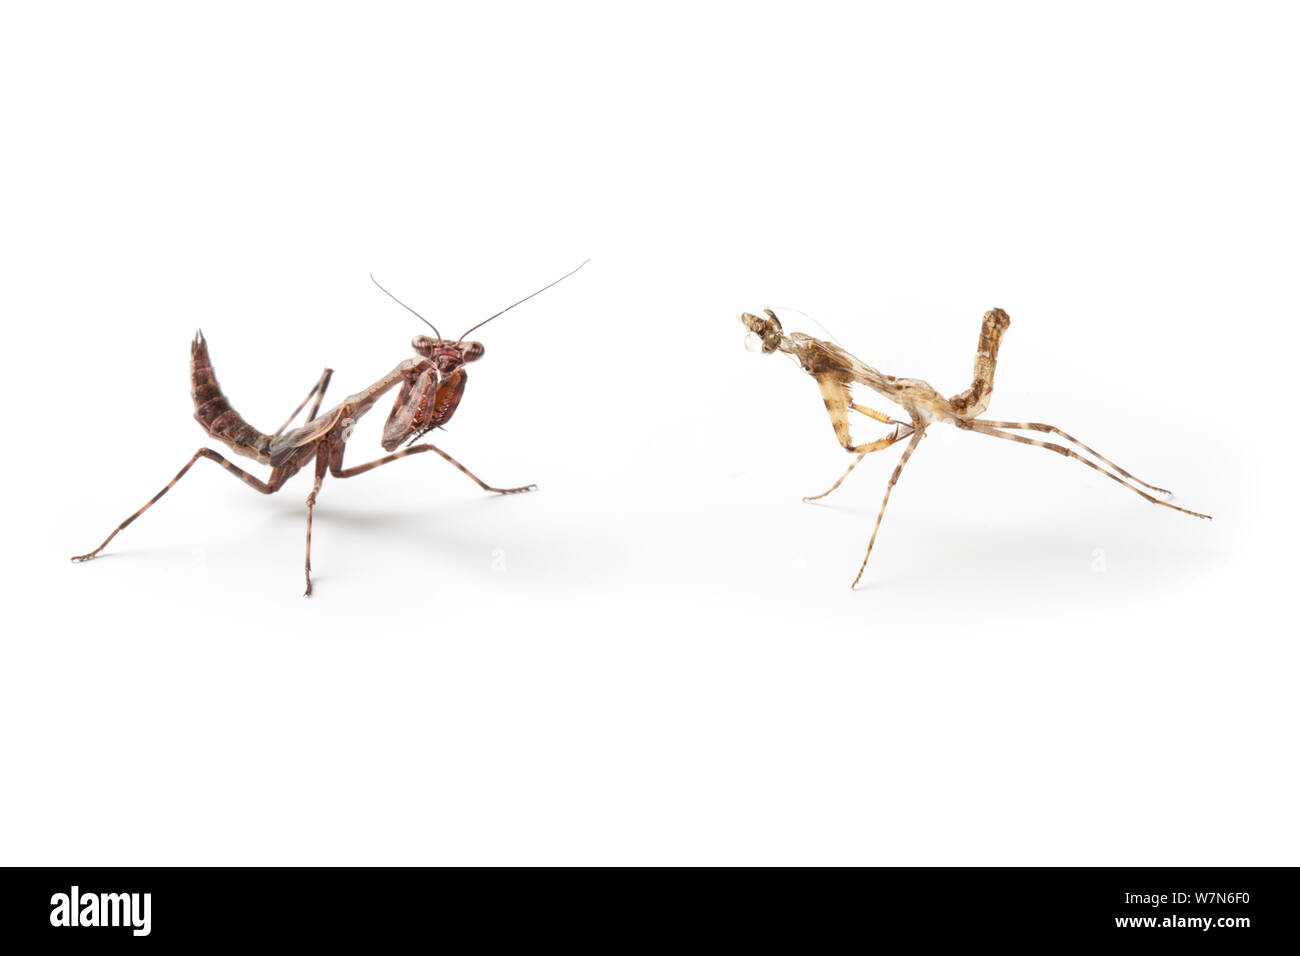 Bud Flügel Mantis (Parasphendale affinis) juvenile (links) neben vor kurzem Schuppen Haut (rechts), auf einem weißen Hintergrund. Captive, mit Ursprung aus Afrika. Stockfoto